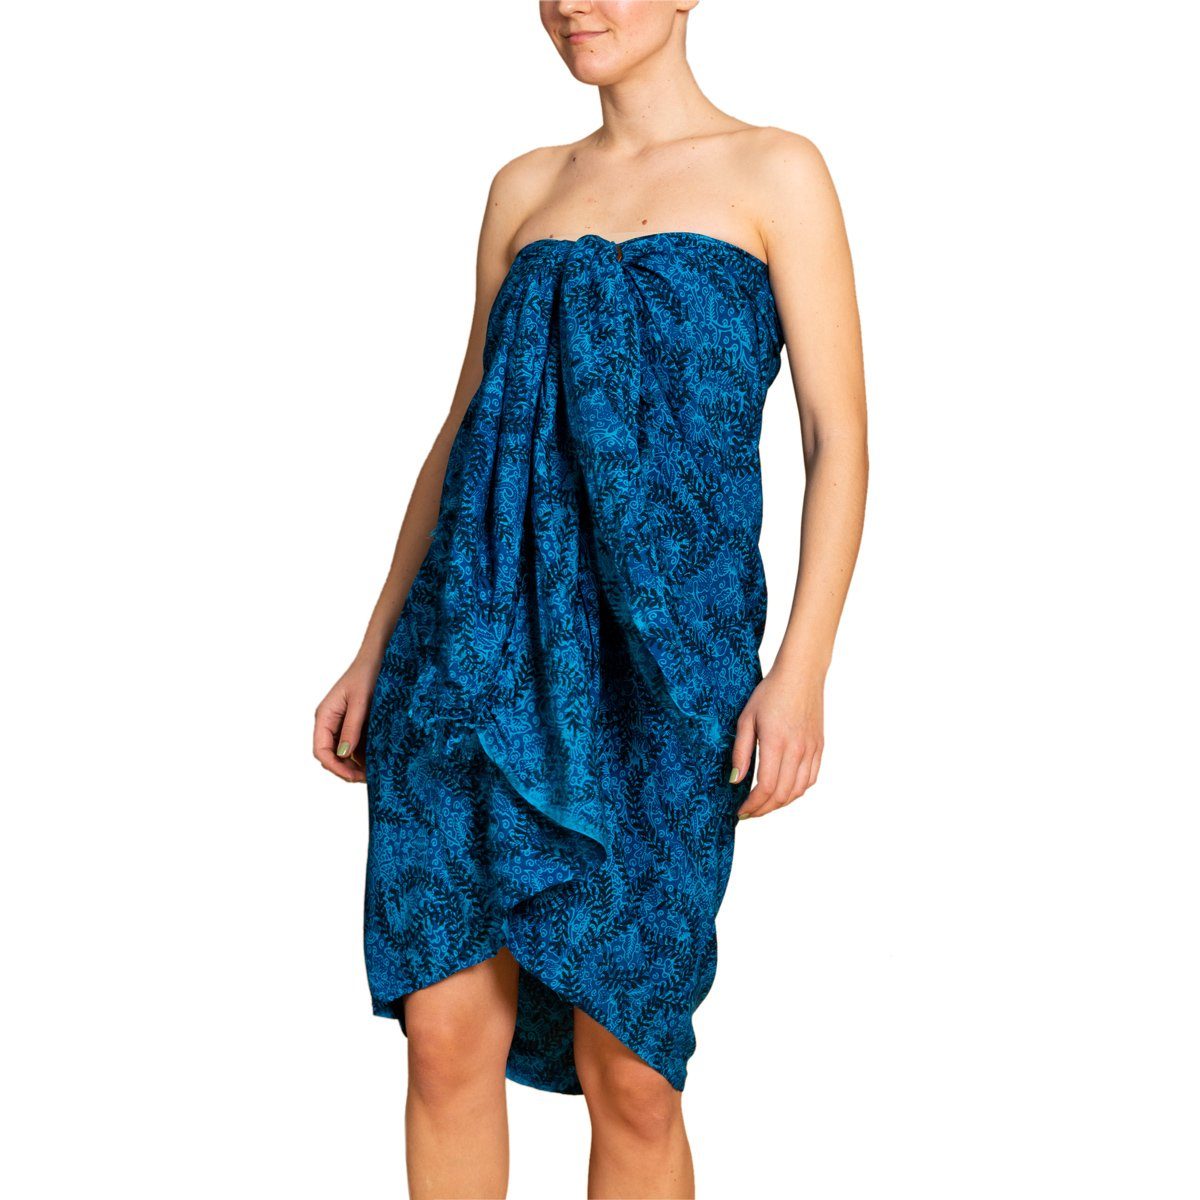 PANASIAM Wachsbatik B108 Strandkleid Pareo Blautöne Cover-up tones blue Schultertuch Viskose Strand aus hochwertiger Halstuch Bikini Tuch den Strandtuch, für Sarong